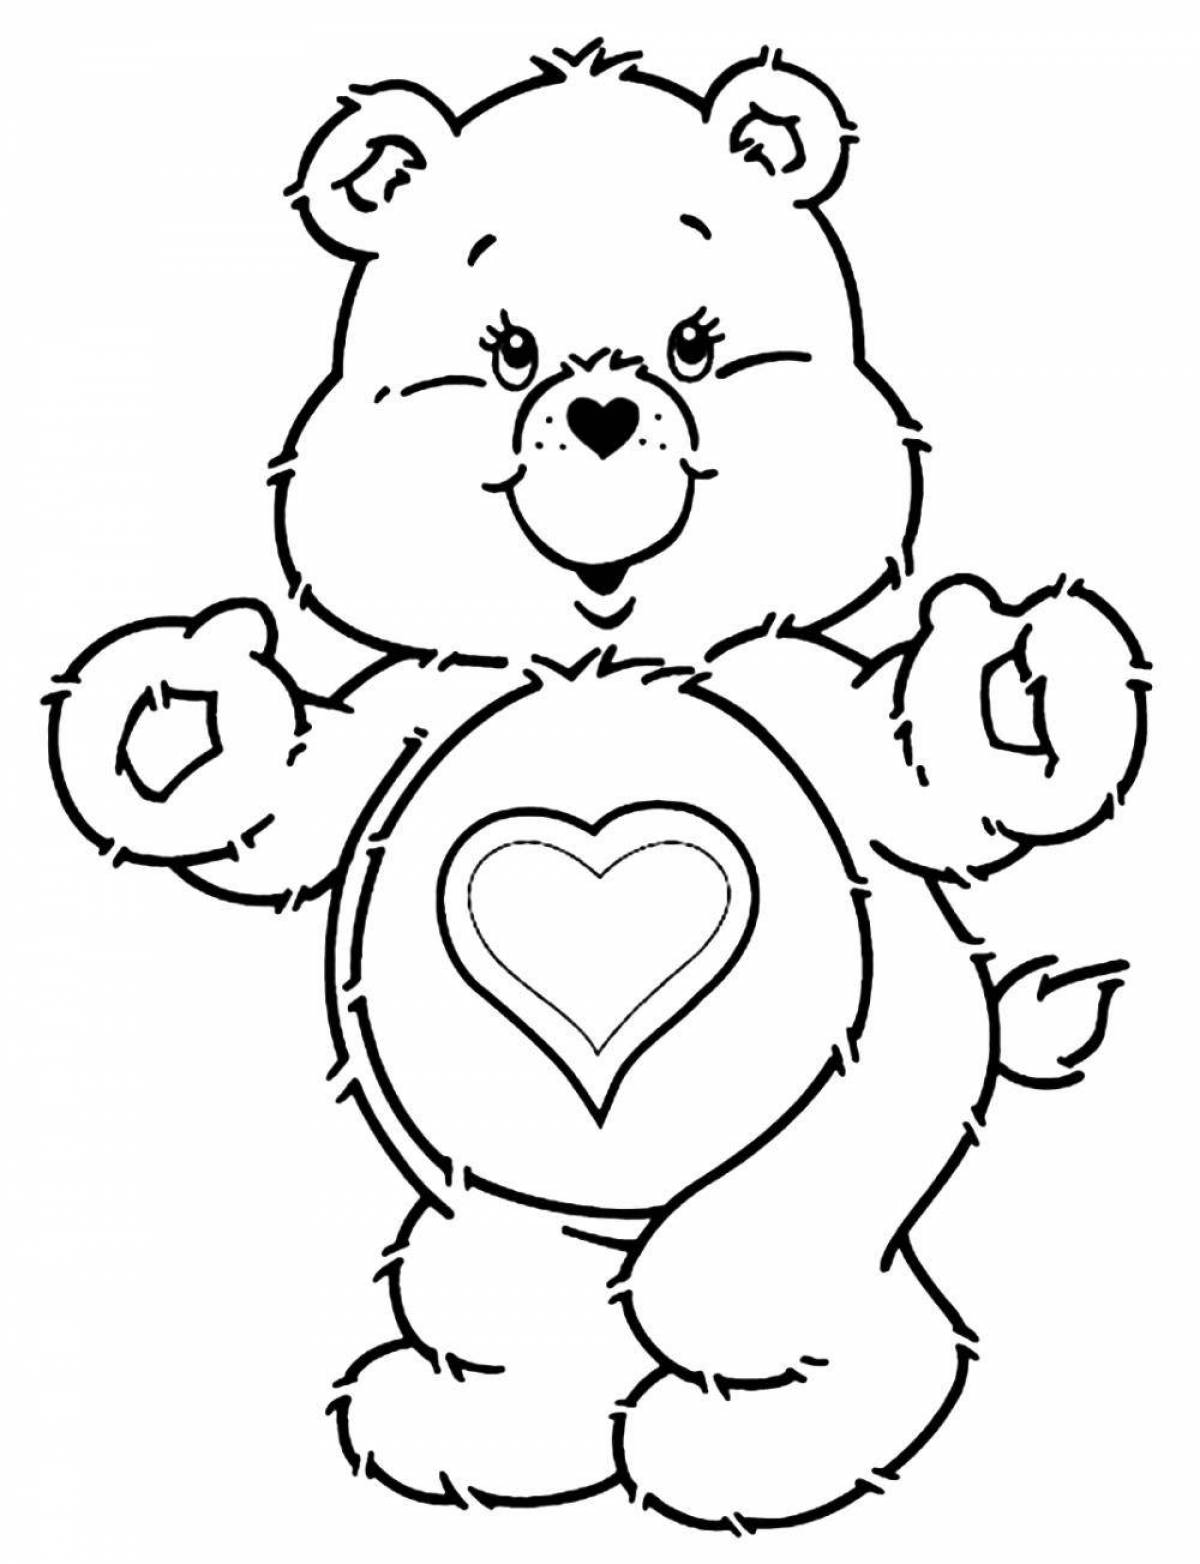 Буйный медведь с рисунком сердца